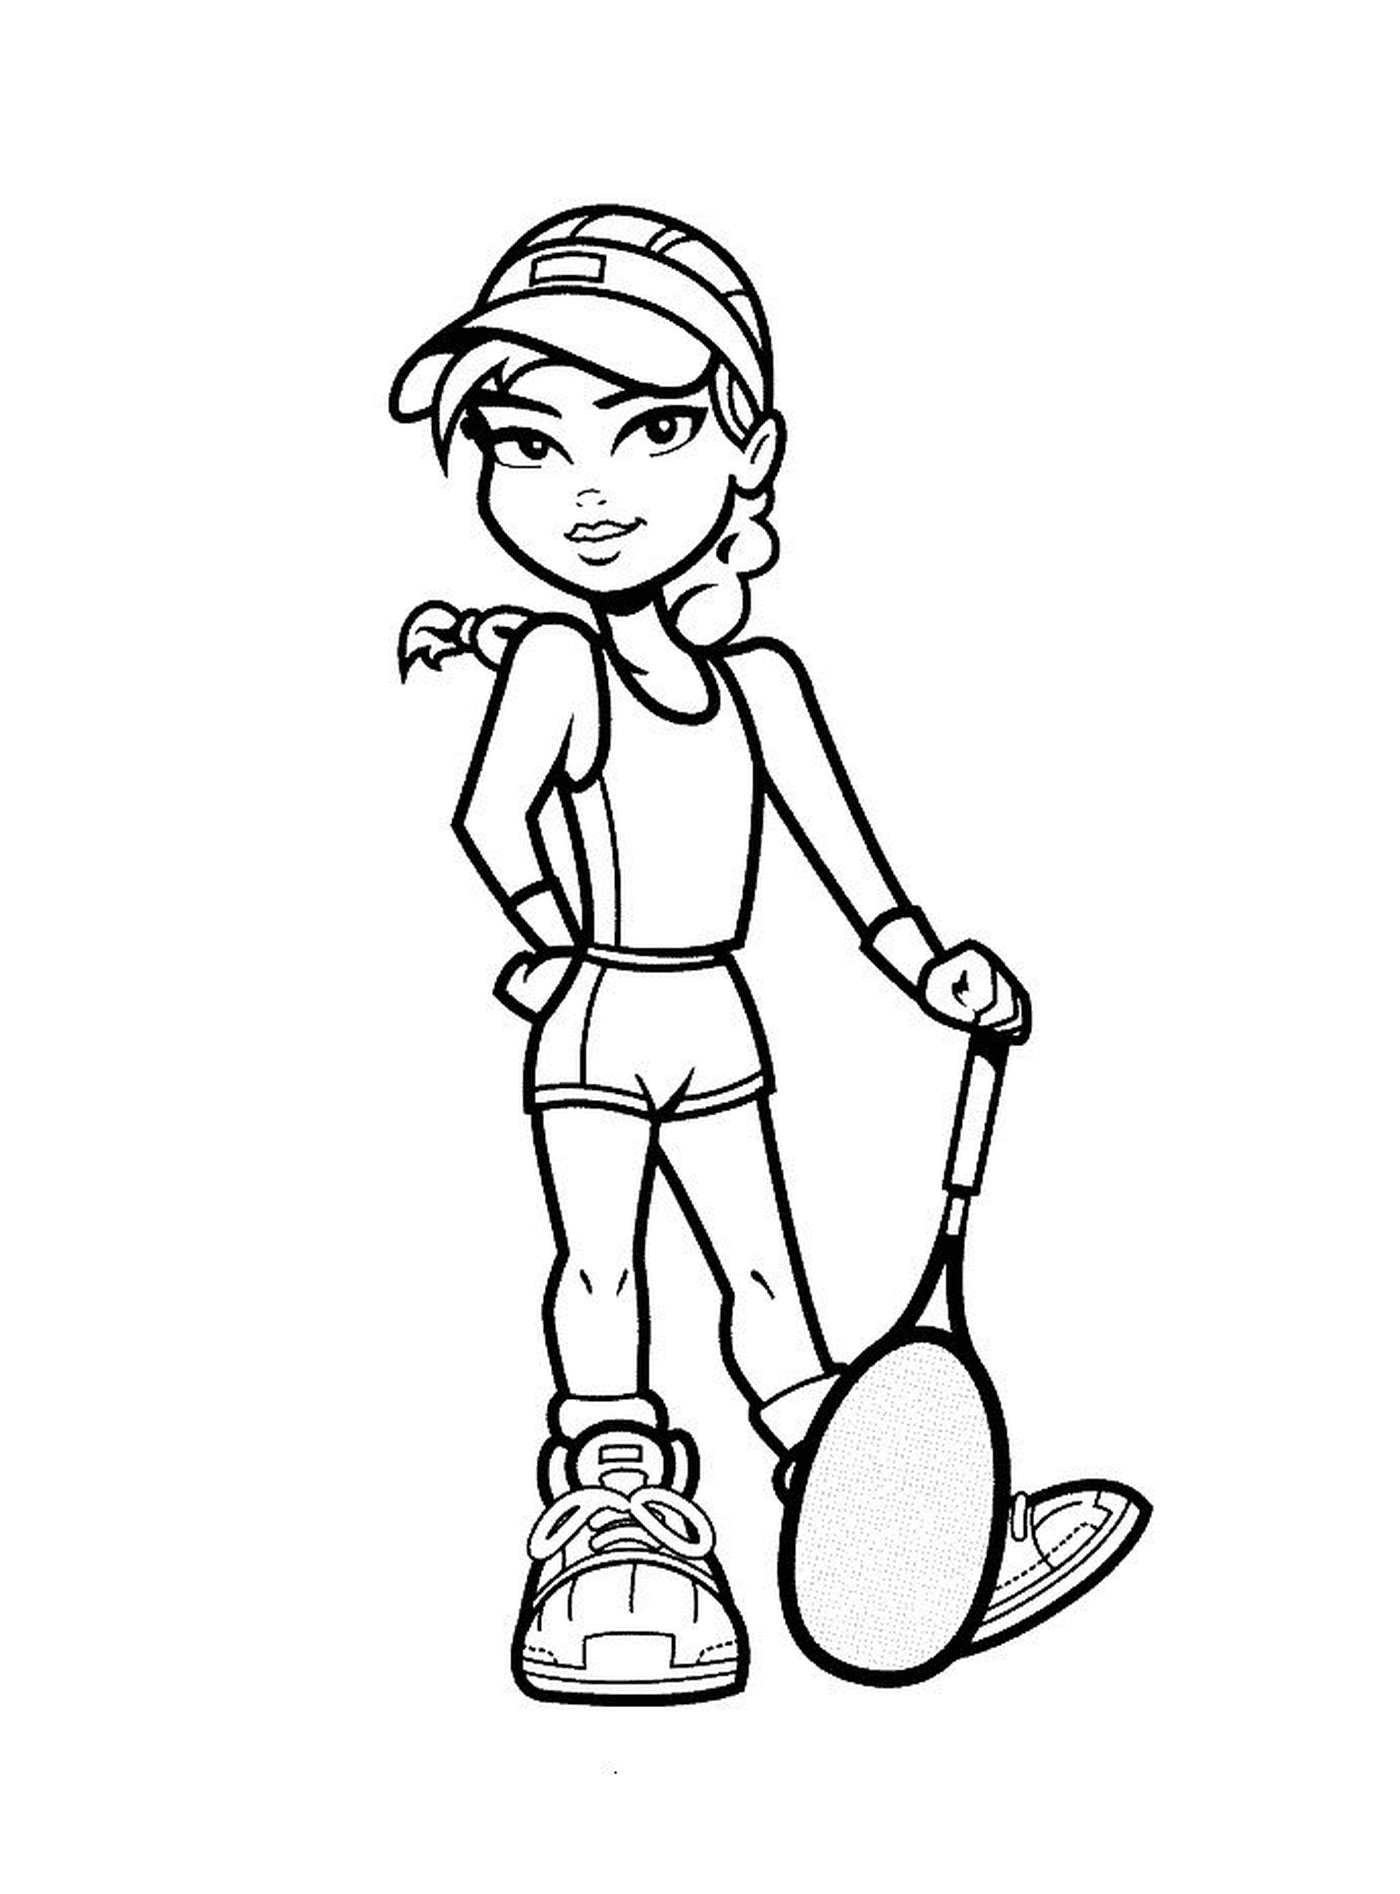  Deporte, tenis, chica con una raqueta de nieve 